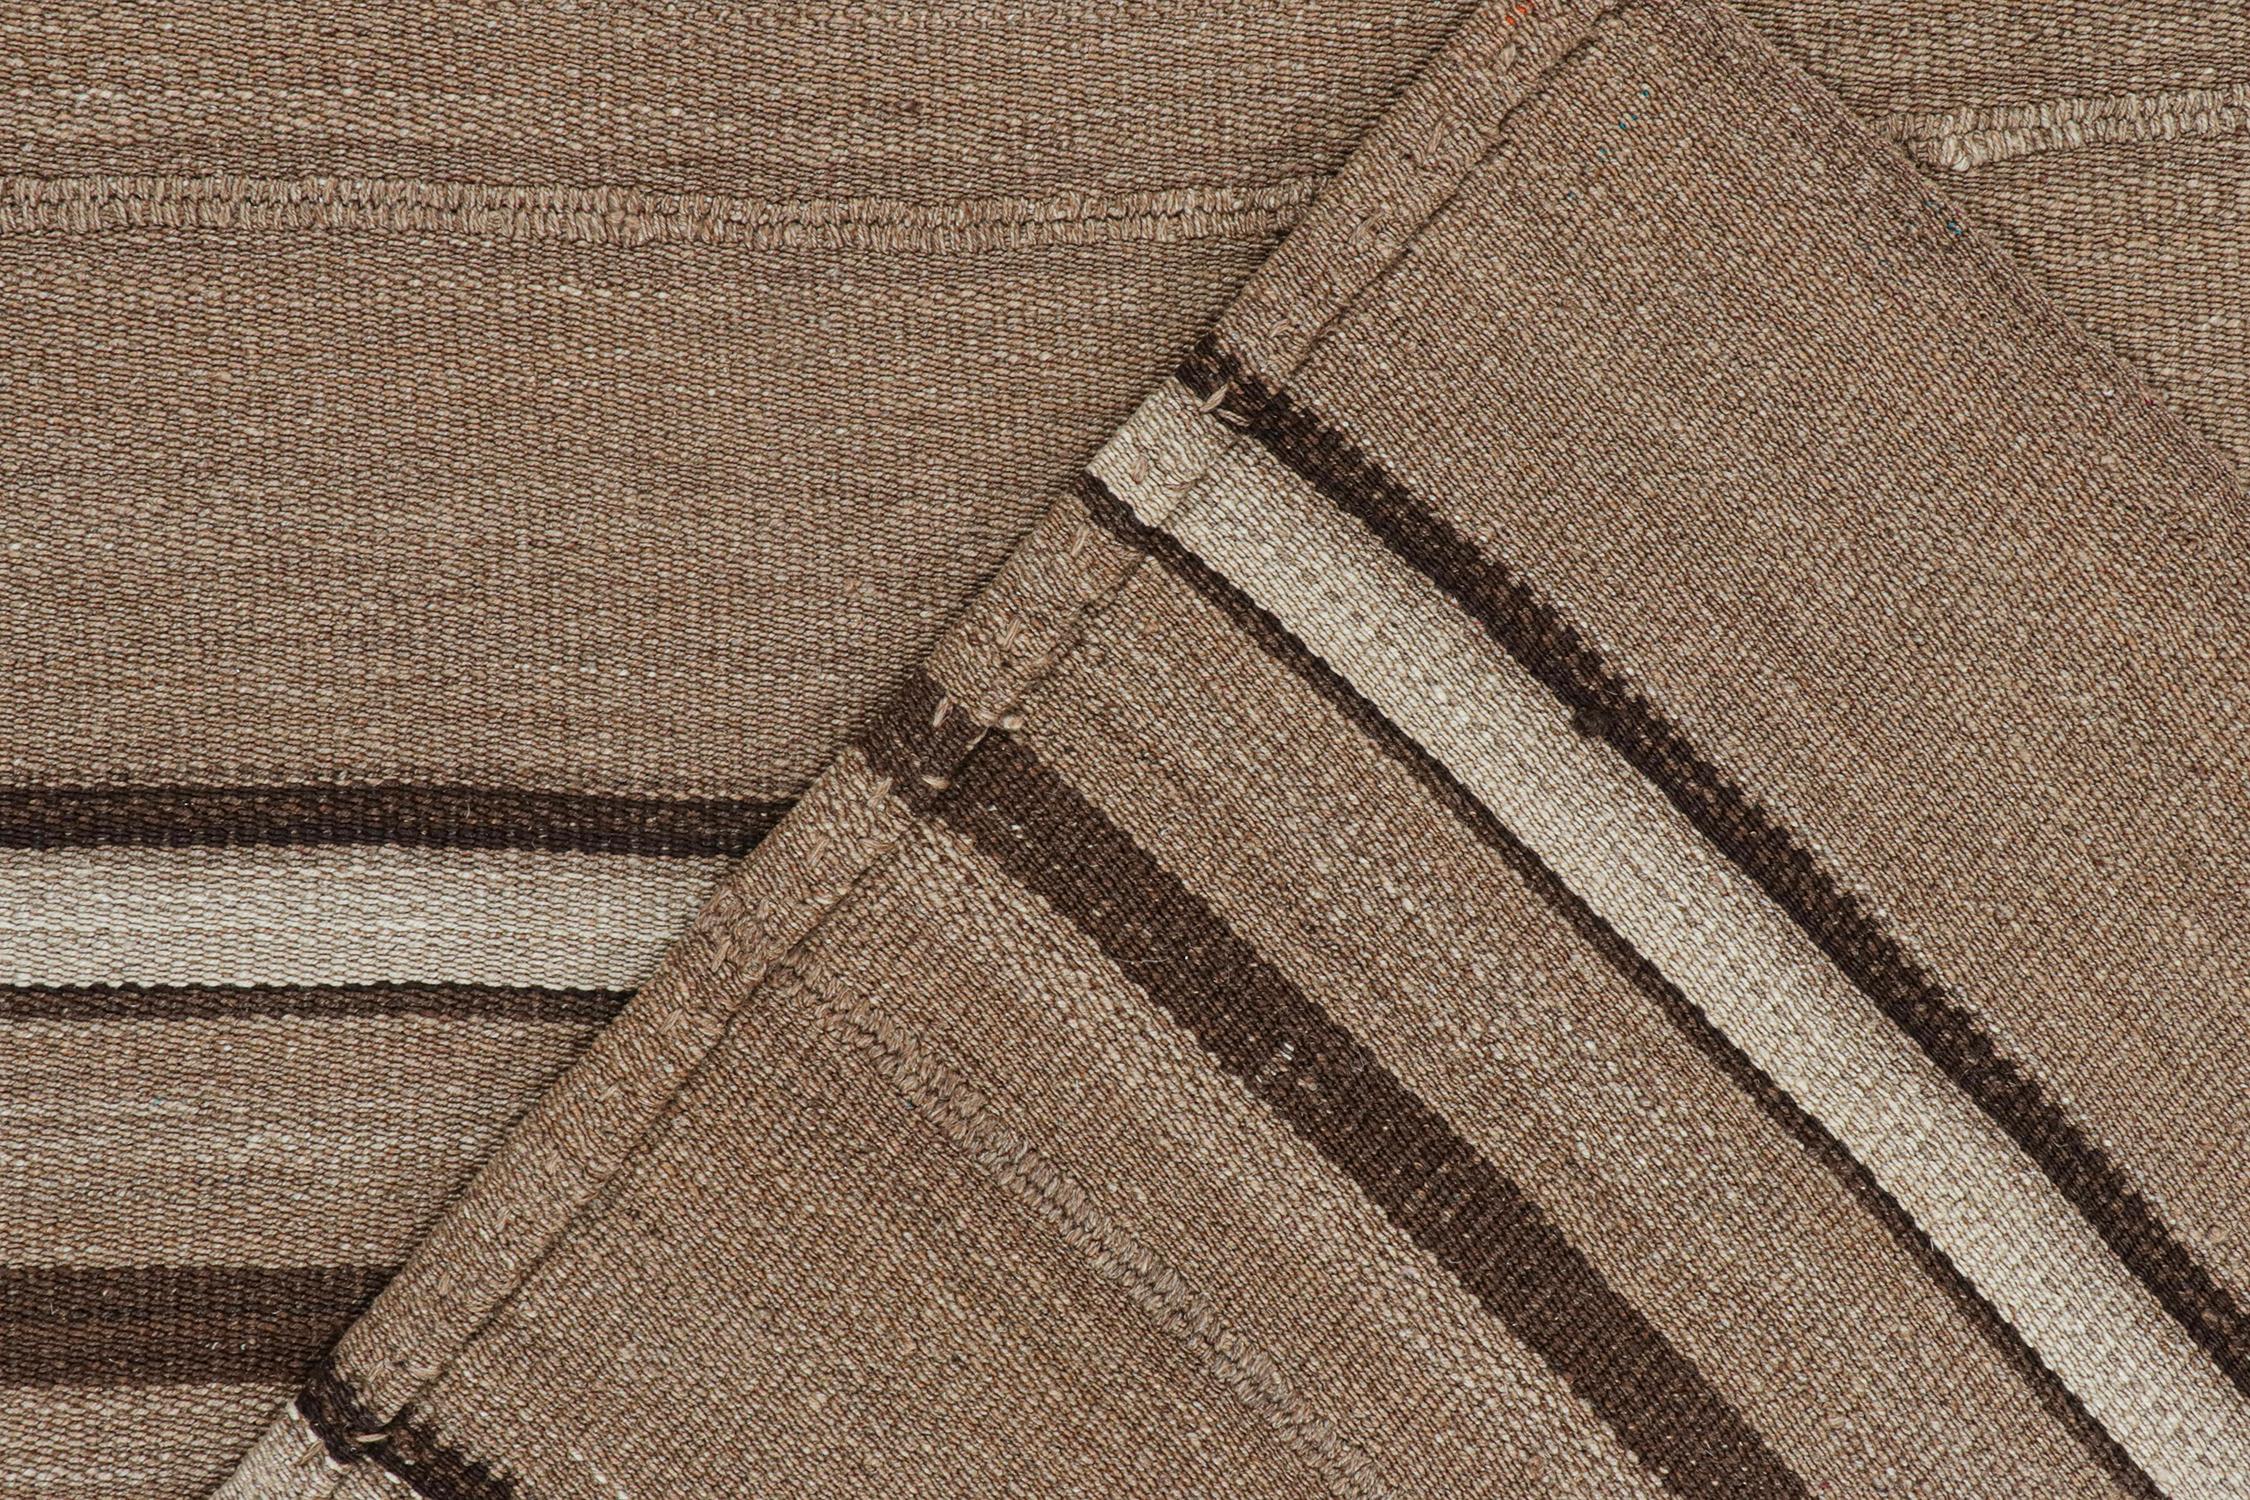 Wool Vintage Shahsavan Persian Kilim in Beige-Brown Stripes by Rug & Kilim For Sale